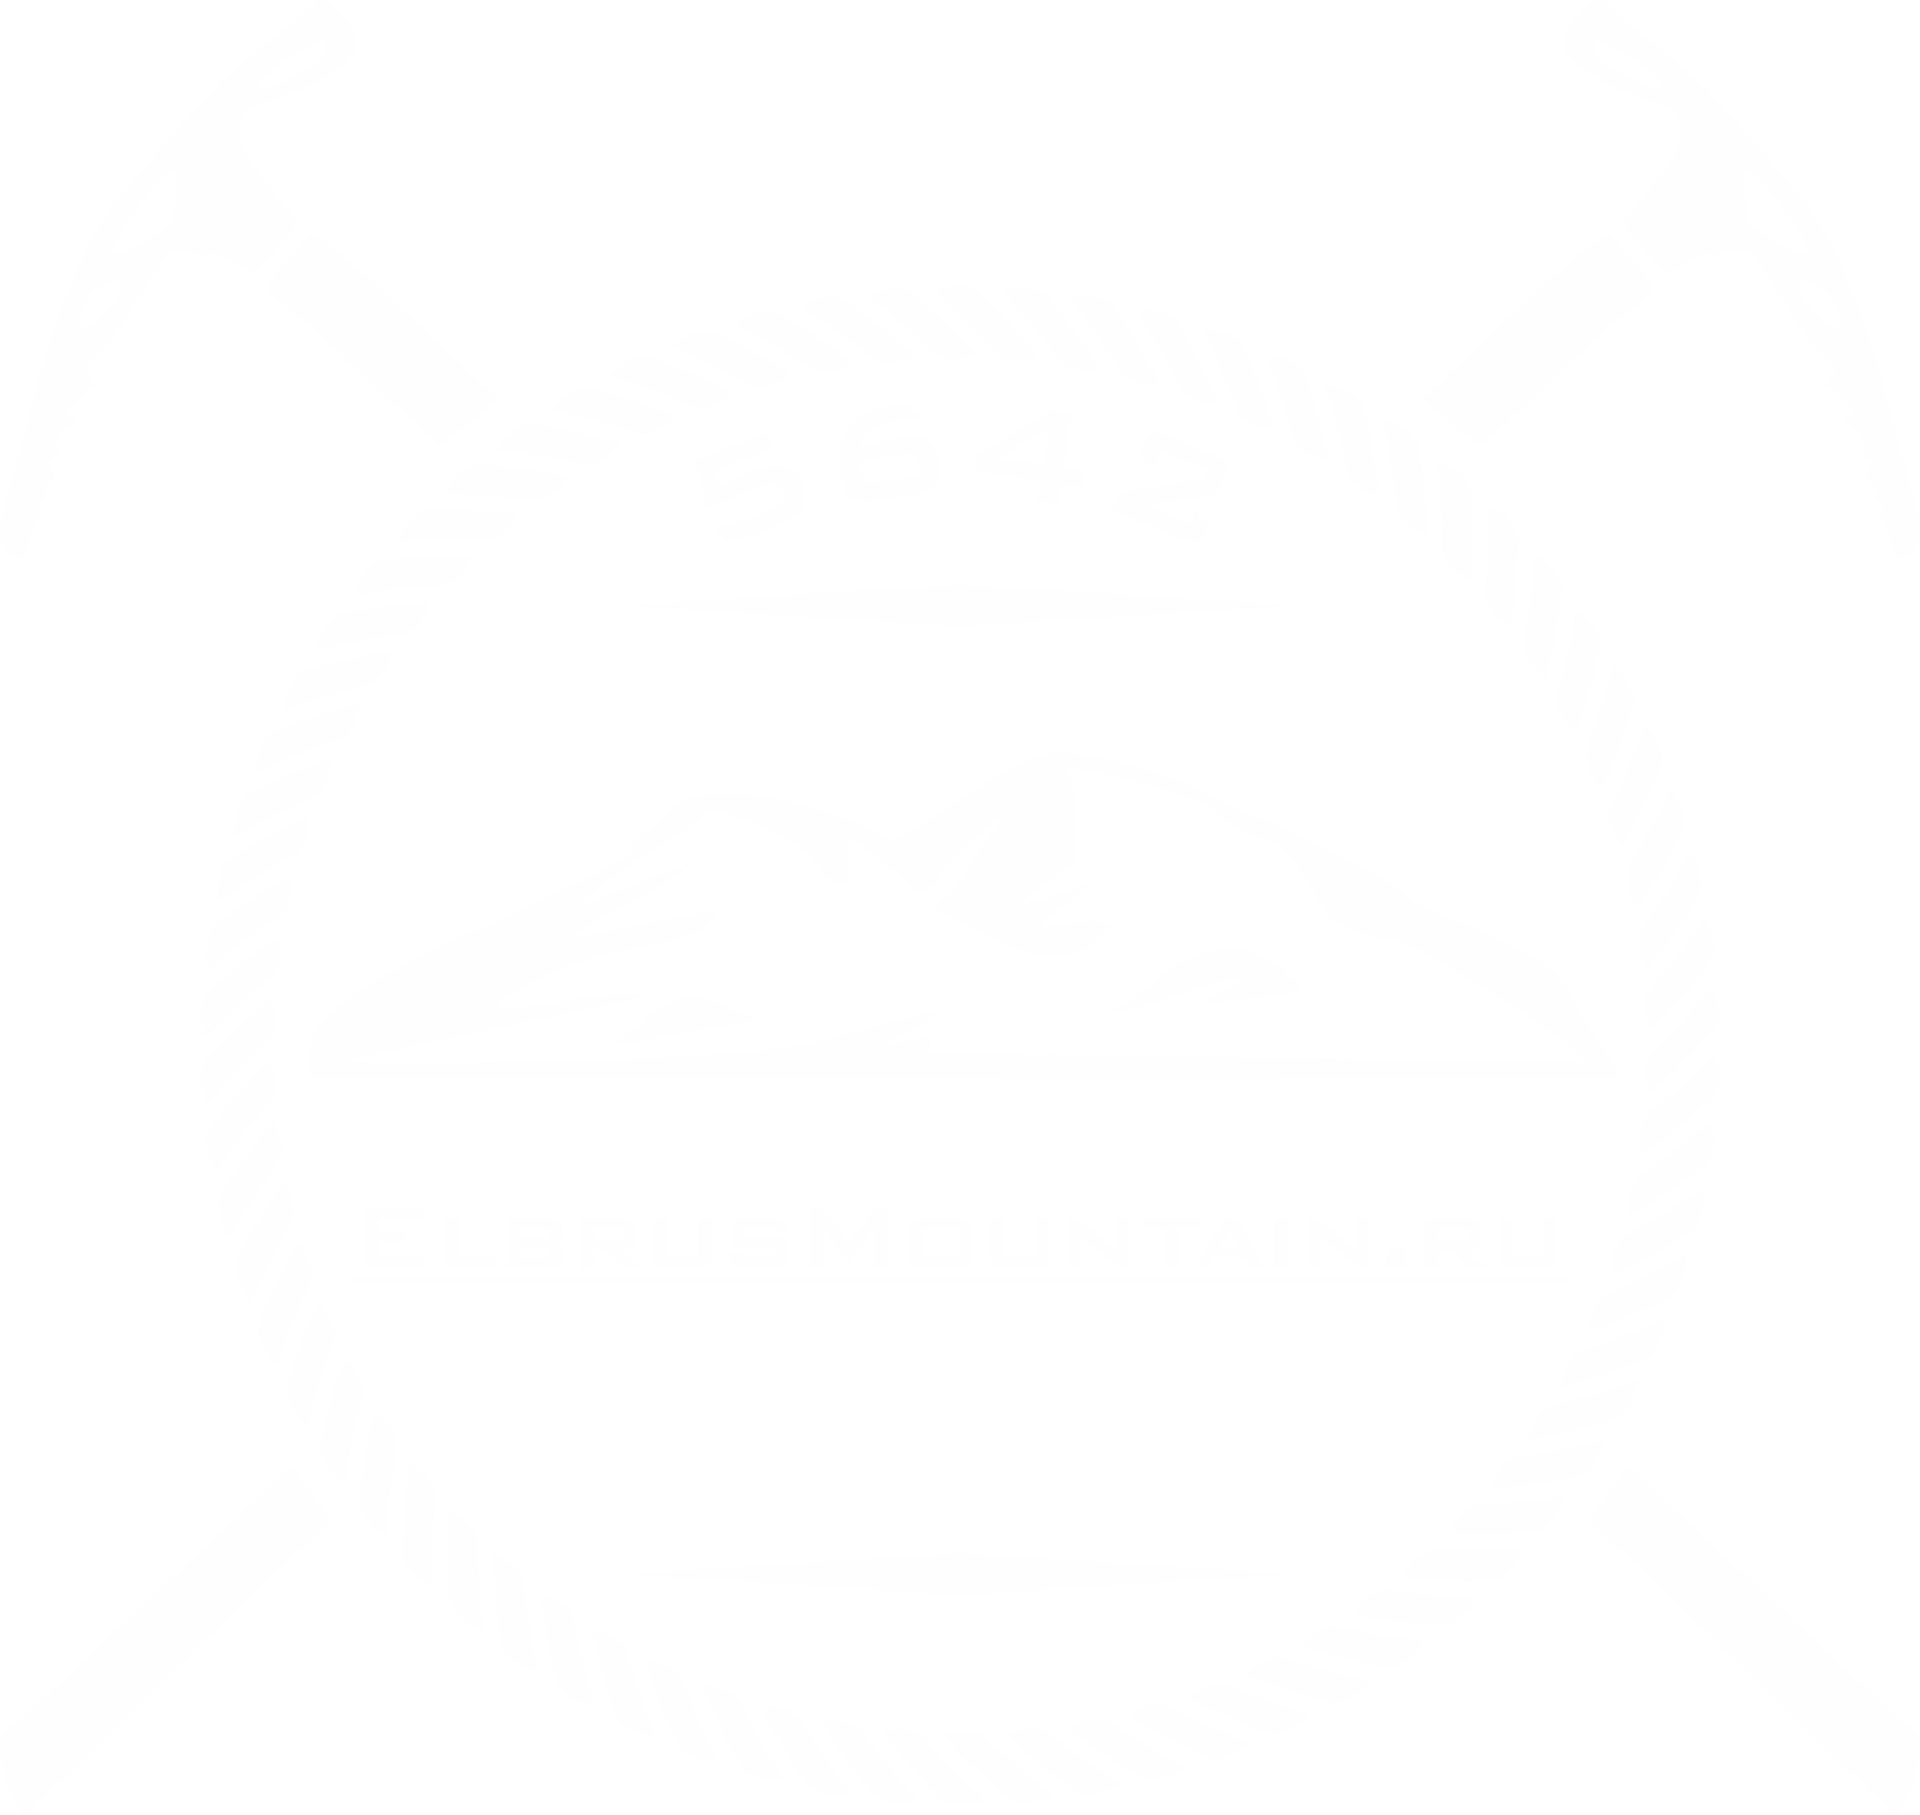 ElbrusMountain team